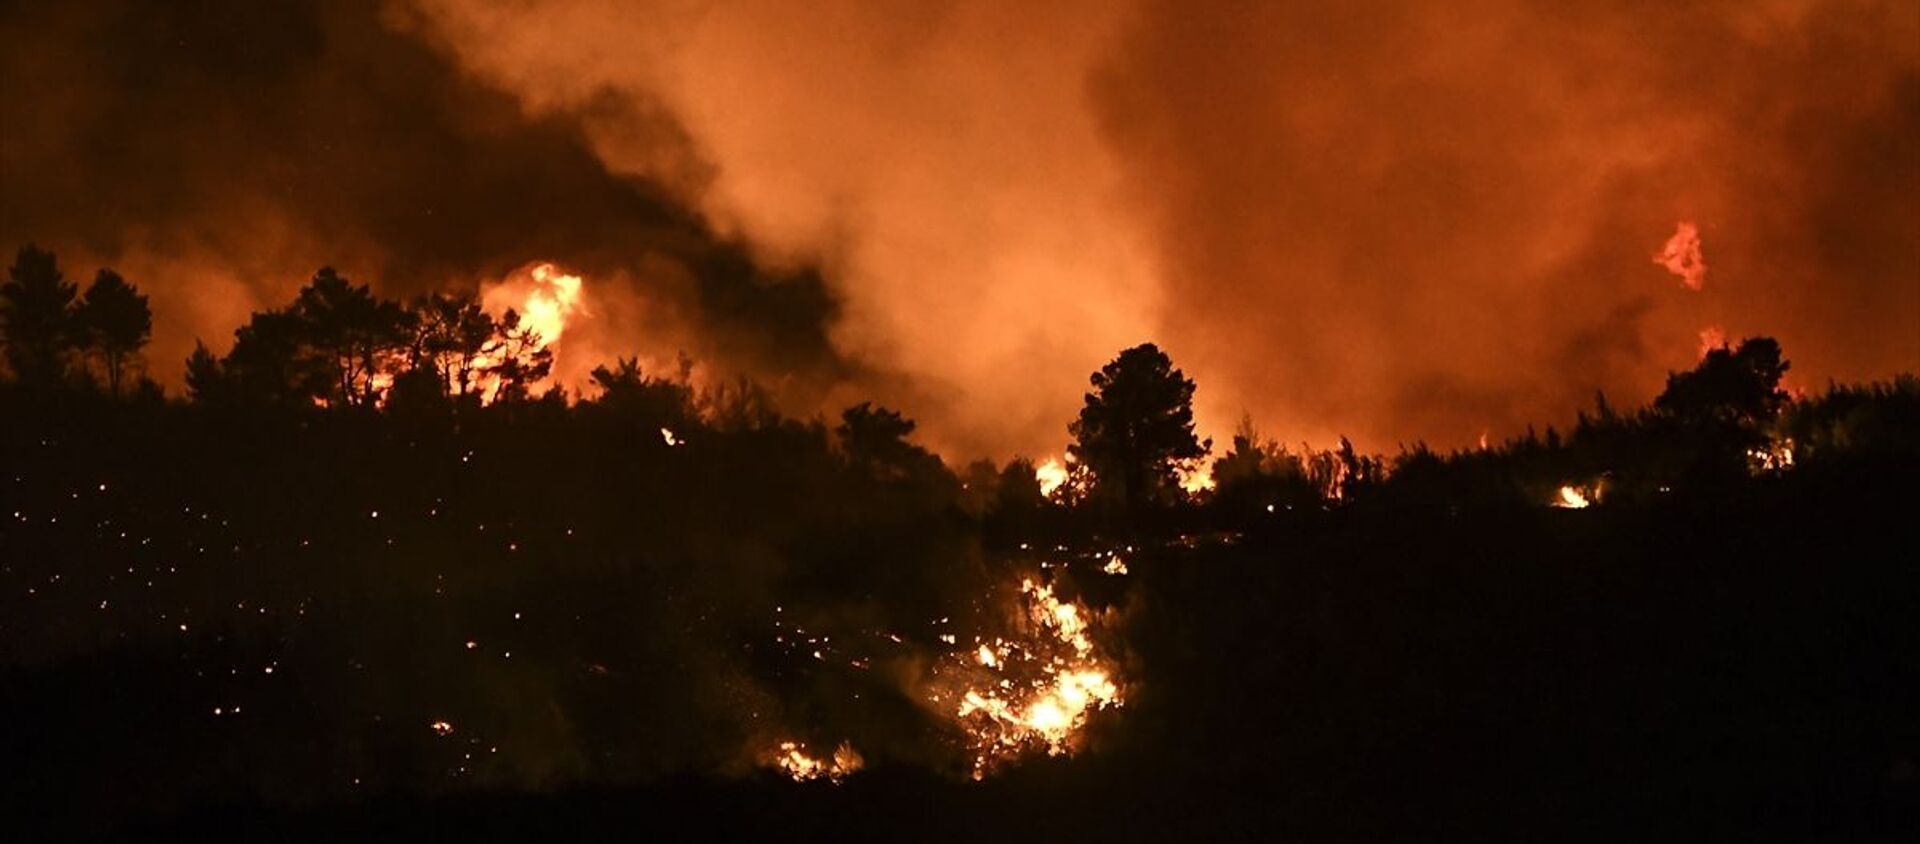 Yunanistan’ın başkenti Atina yakınlarındaki bölgede ormanlık alanda çıkan ve yerleşim yerlerini etkisi altına aldığı belirtilen yangının yeniden alevlendiği bildirildi. - Sputnik Türkiye, 1920, 06.08.2021